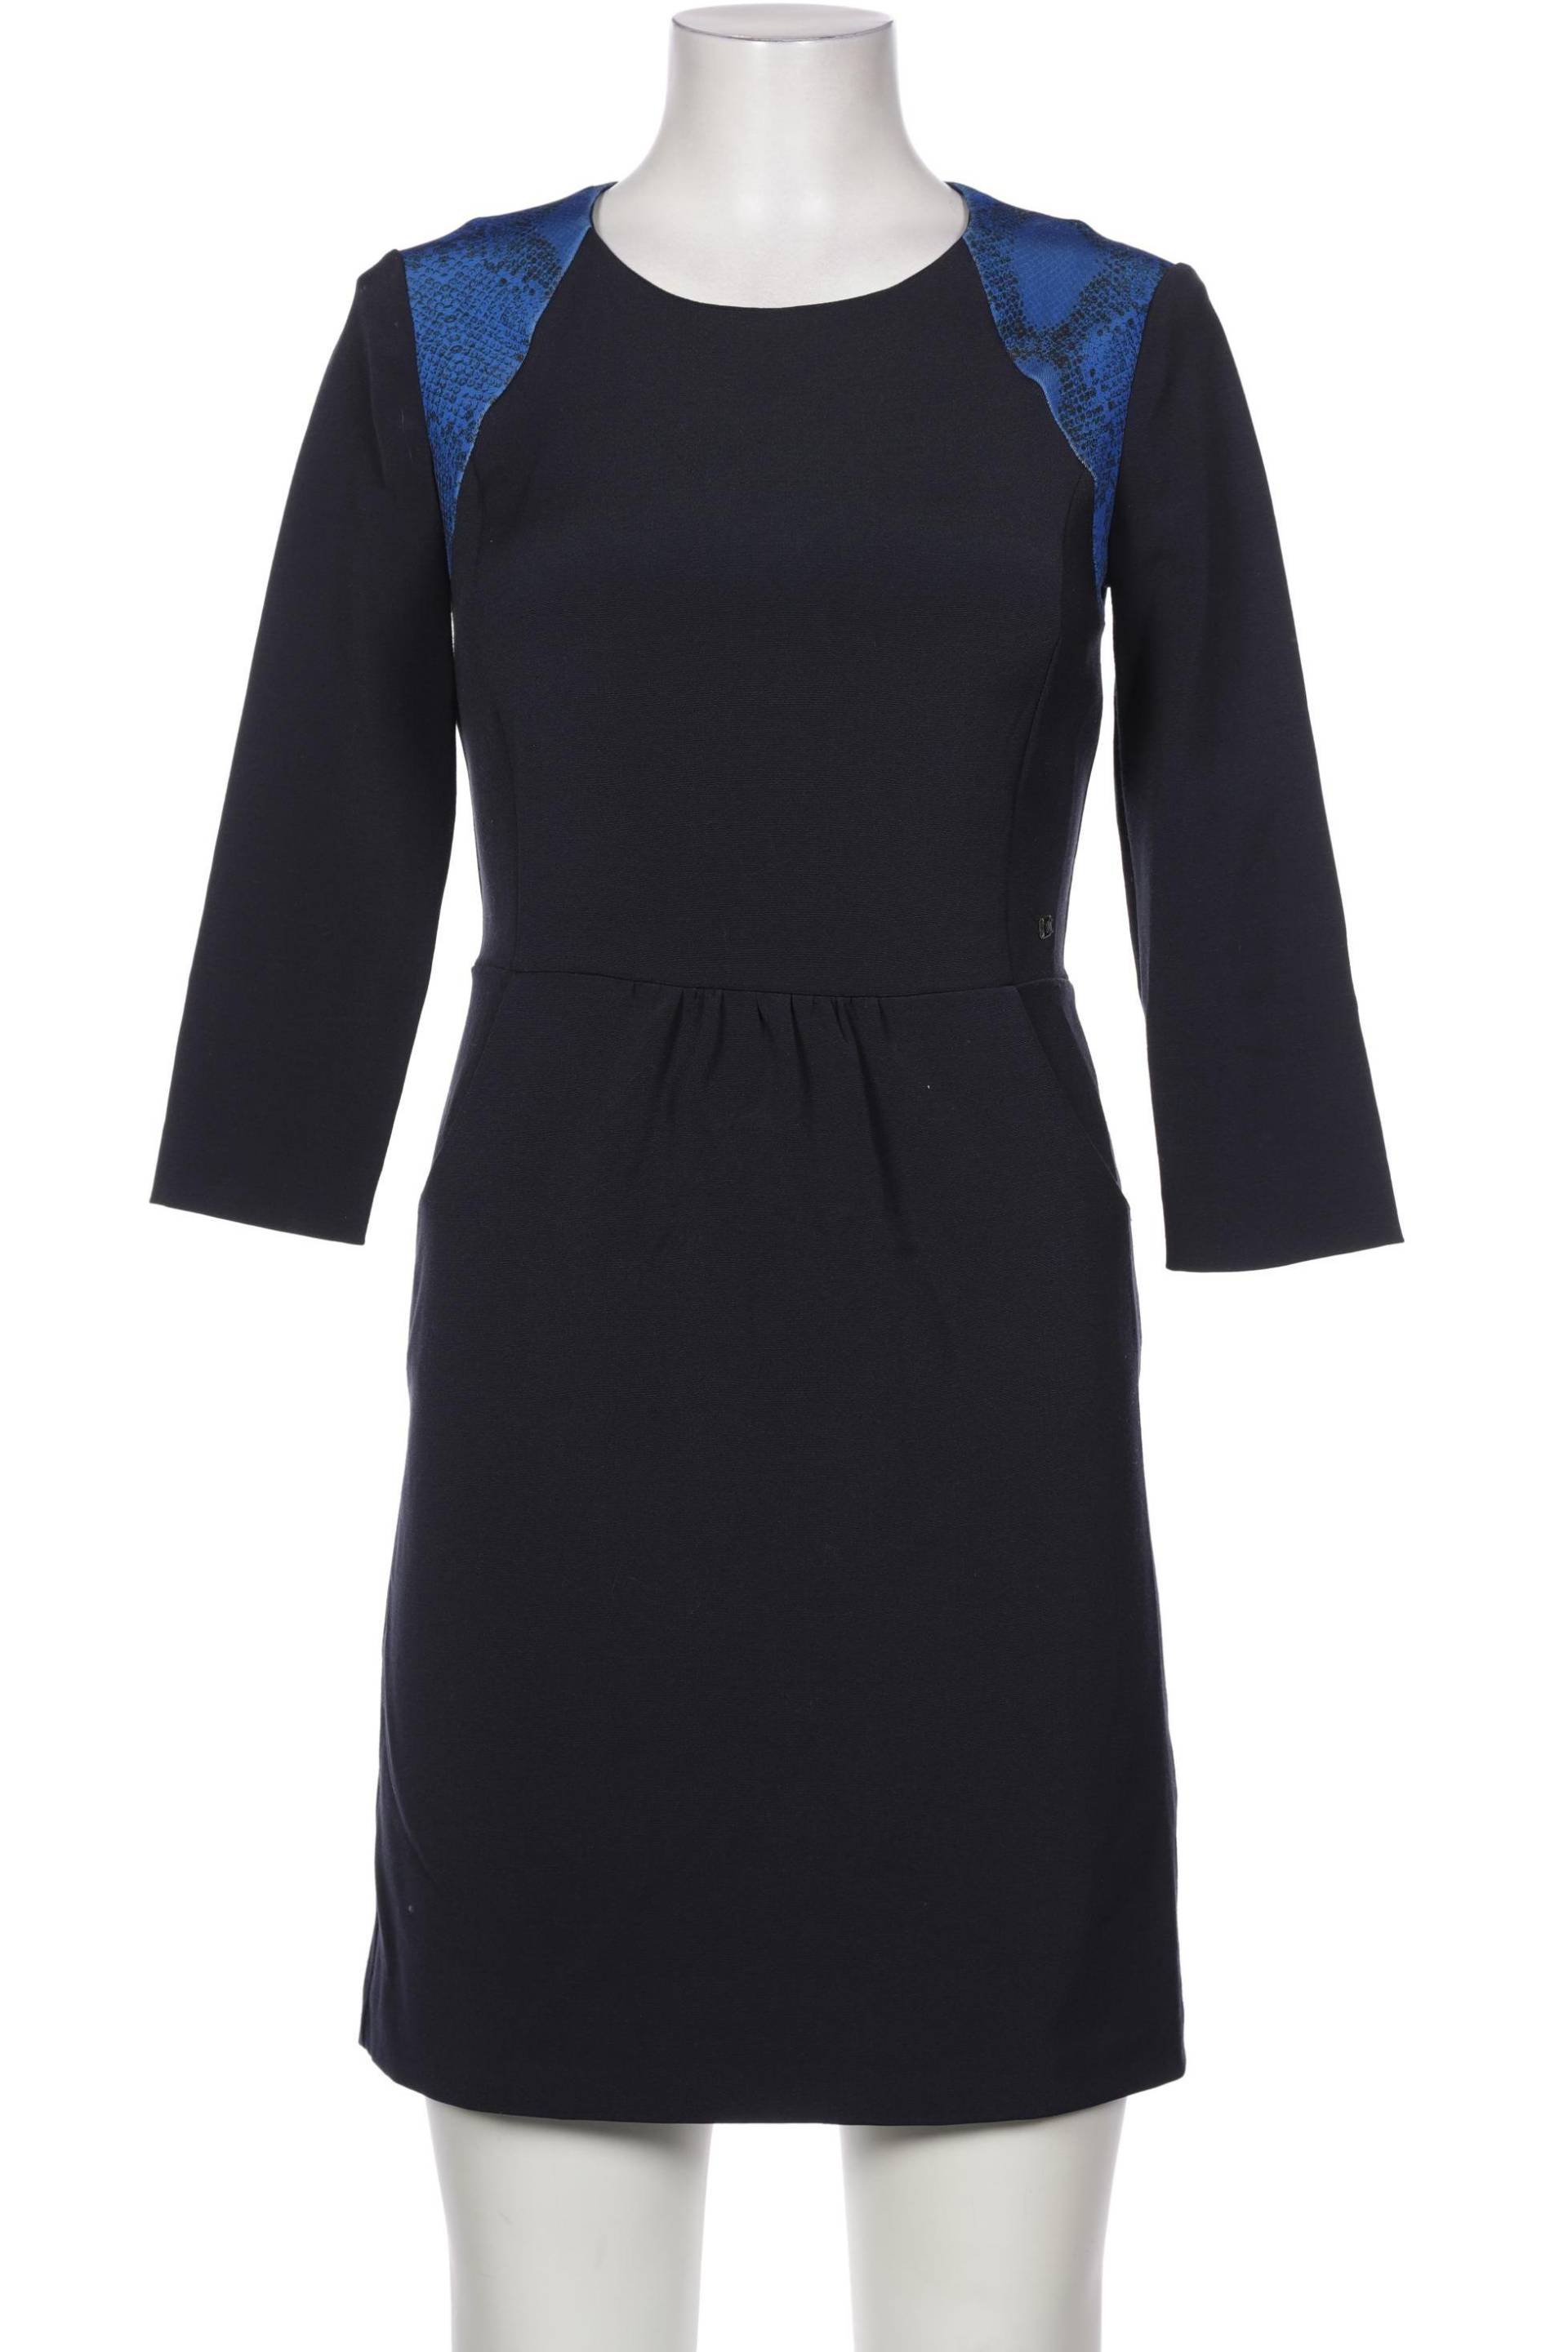 Trussardi Damen Kleid, marineblau von Trussardi